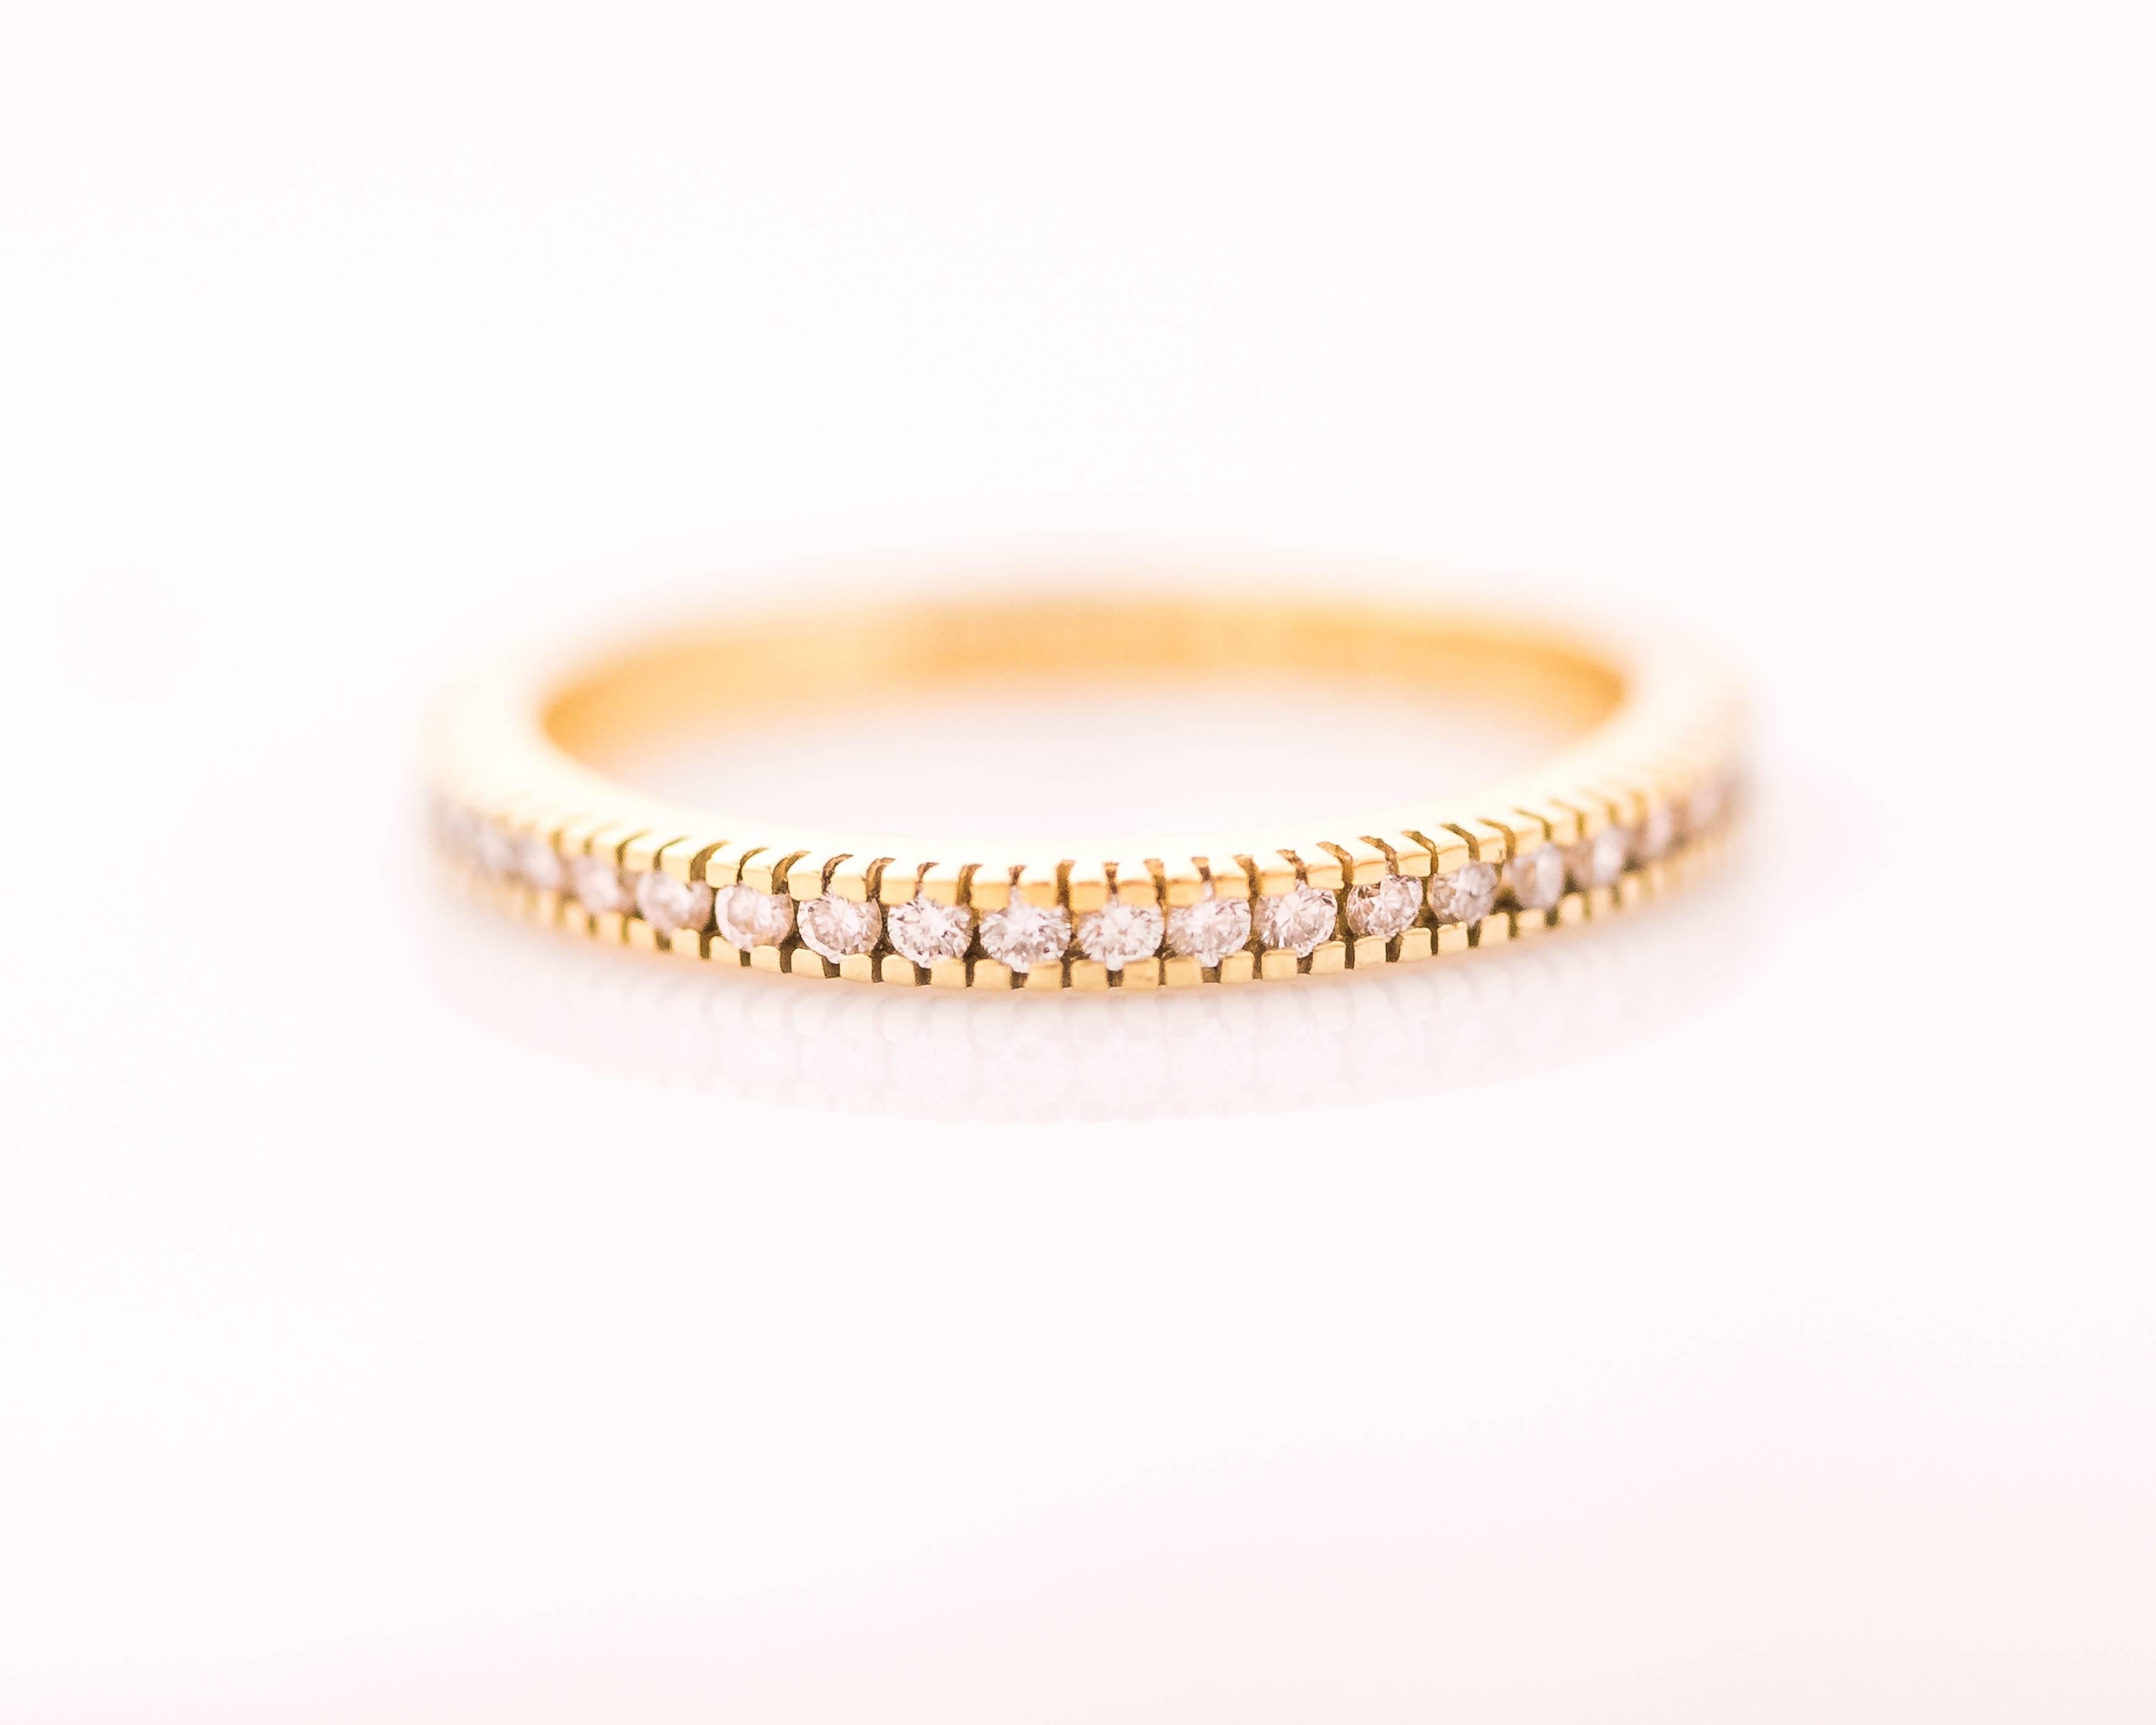  Portez ce magnifique bracelet éternité en diamants du designer des années 1990 Hidalgo seul, superposé ou en tant qu'alliance. Elle comporte 0,30 carat de diamants ronds et brillants sertis en or jaune 18 carats le long de la moitié avant de la